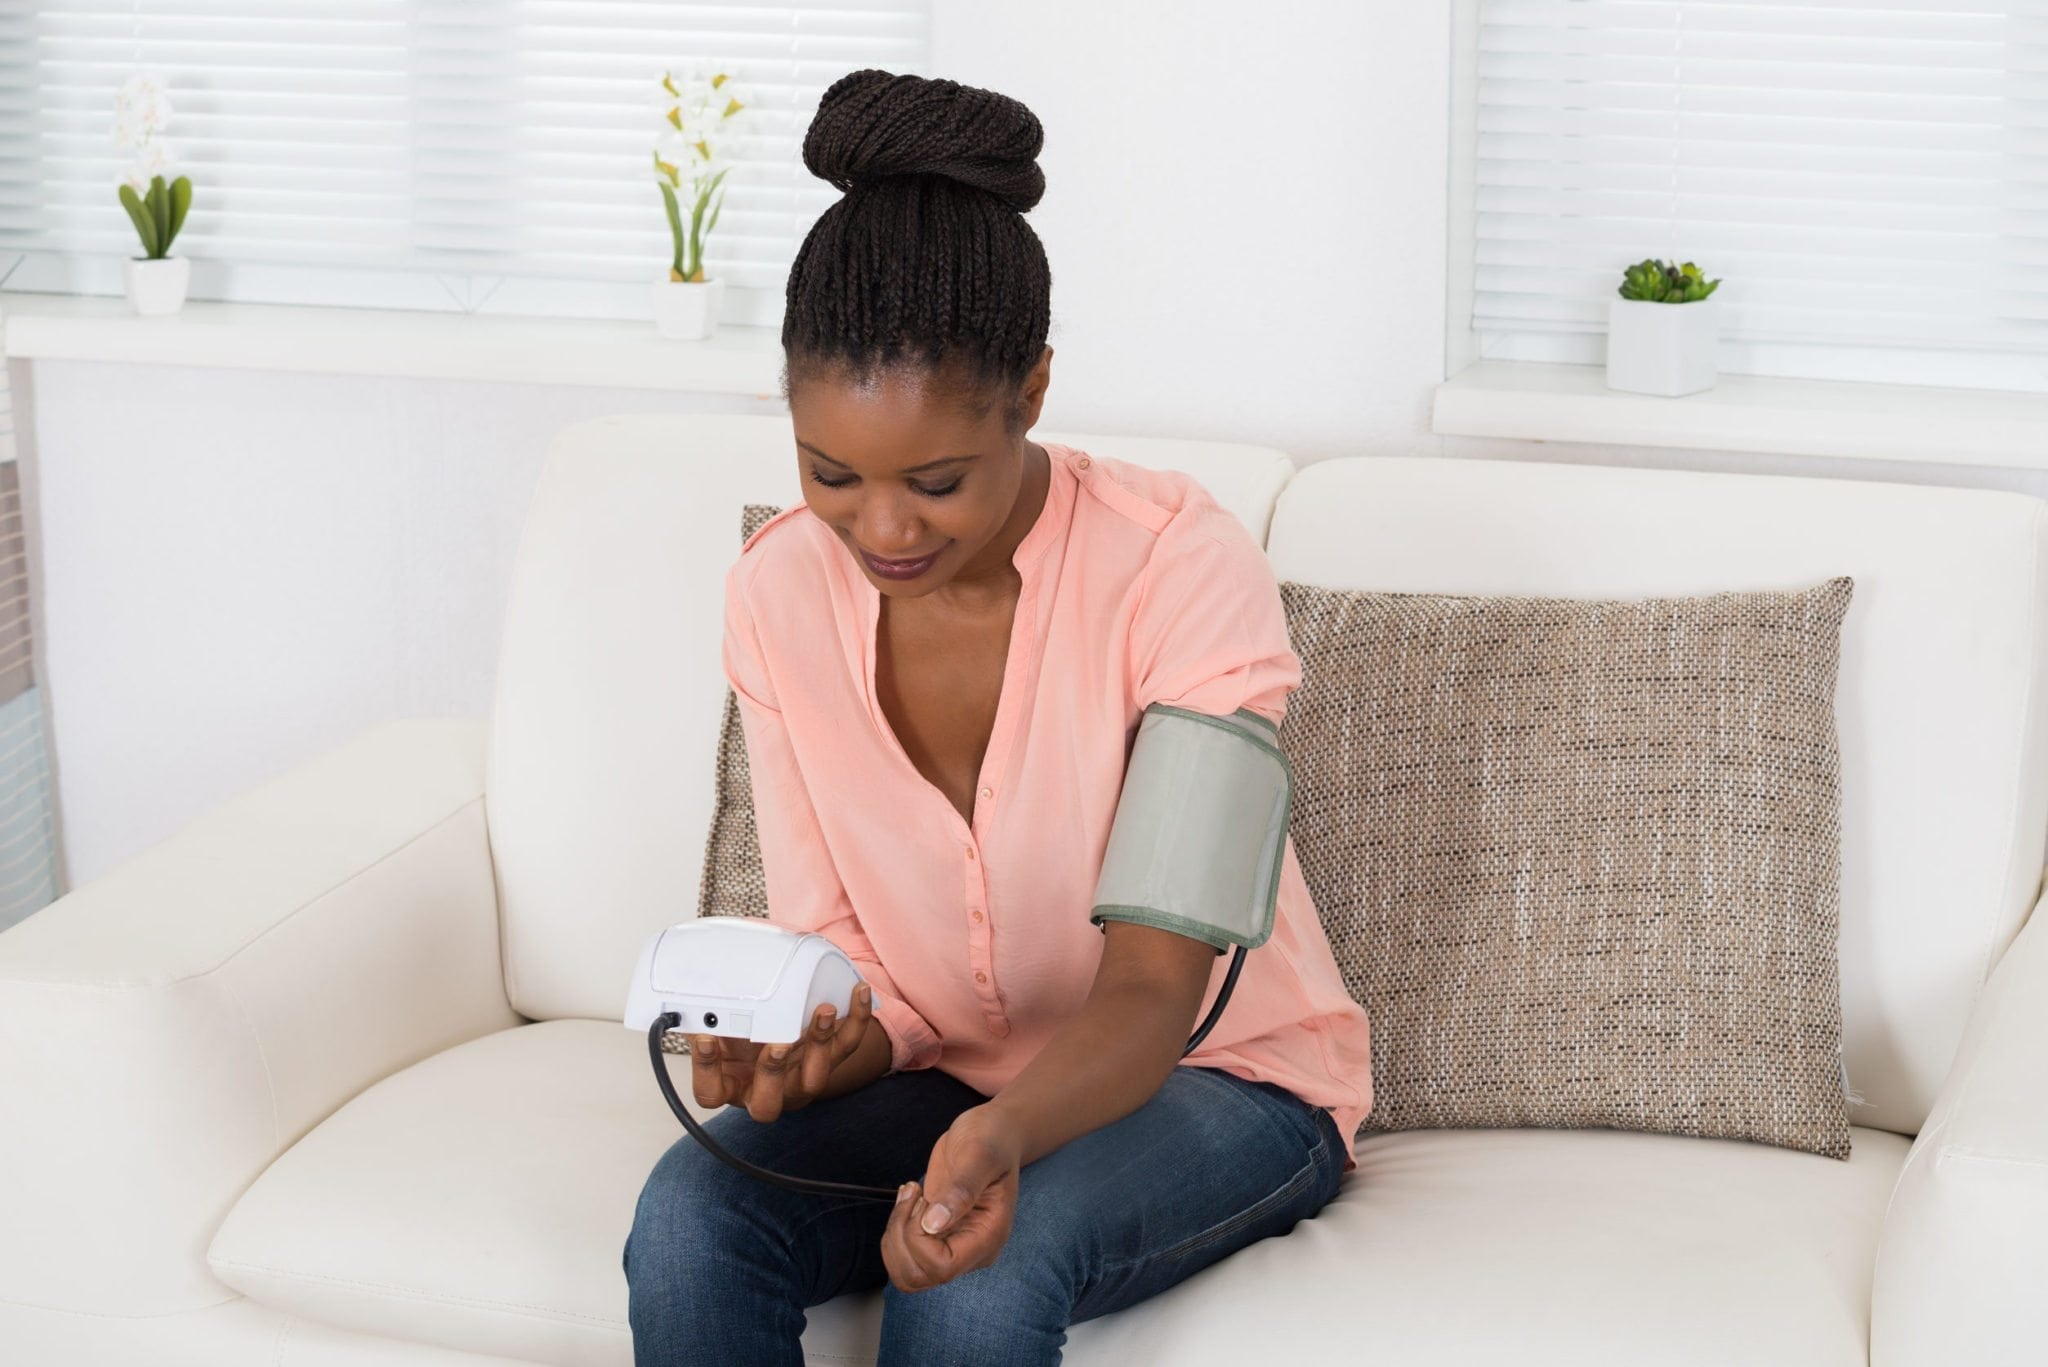 ثلاث حقائق على كل مريض ضغط أن يعرفها - نصائح لمرضى ارتفاع ضغط الدّم - نصائح على المصابين بضغط الدم سماعها - زيادة ضغط الدم